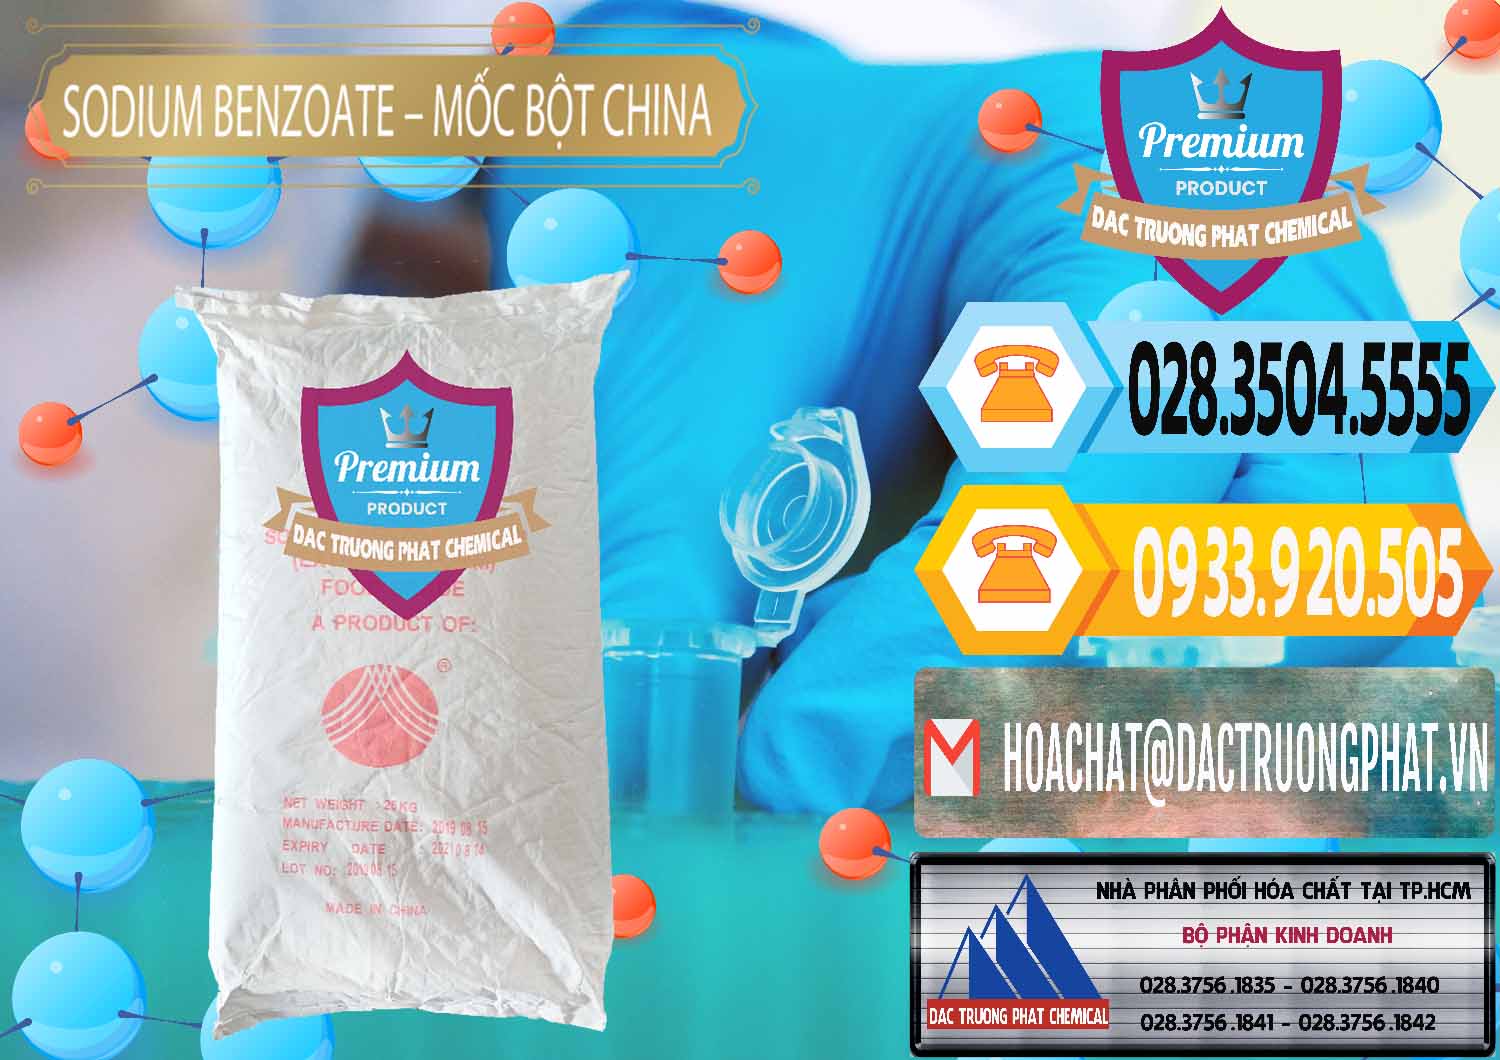 Đơn vị bán & phân phối Sodium Benzoate - Mốc Bột Chữ Cam Food Grade Trung Quốc China - 0135 - Nơi cung cấp ( kinh doanh ) hóa chất tại TP.HCM - hoachattayrua.net